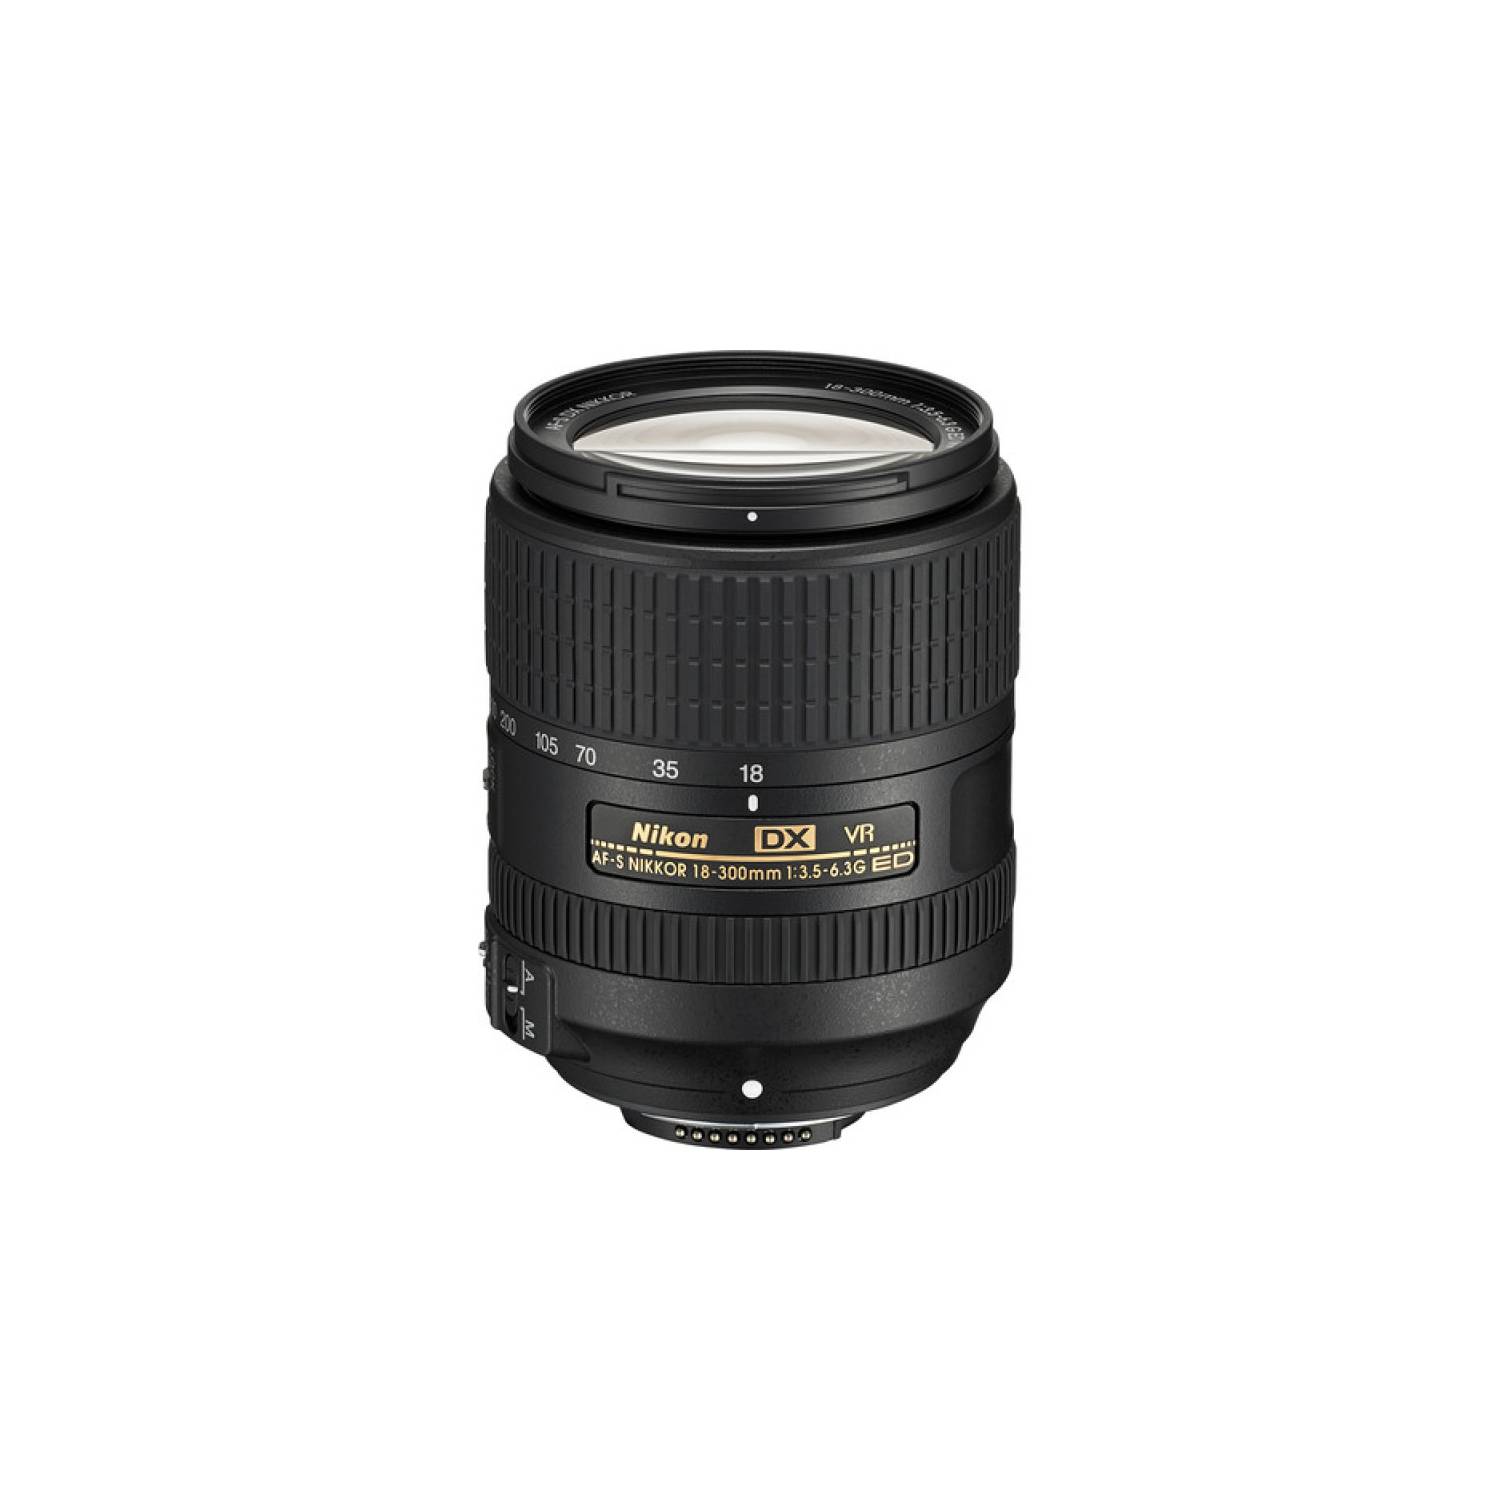 Nikon AF-S DX NIKKOR 18-300mm f3.5-6.3G ED VR Lens NIKON